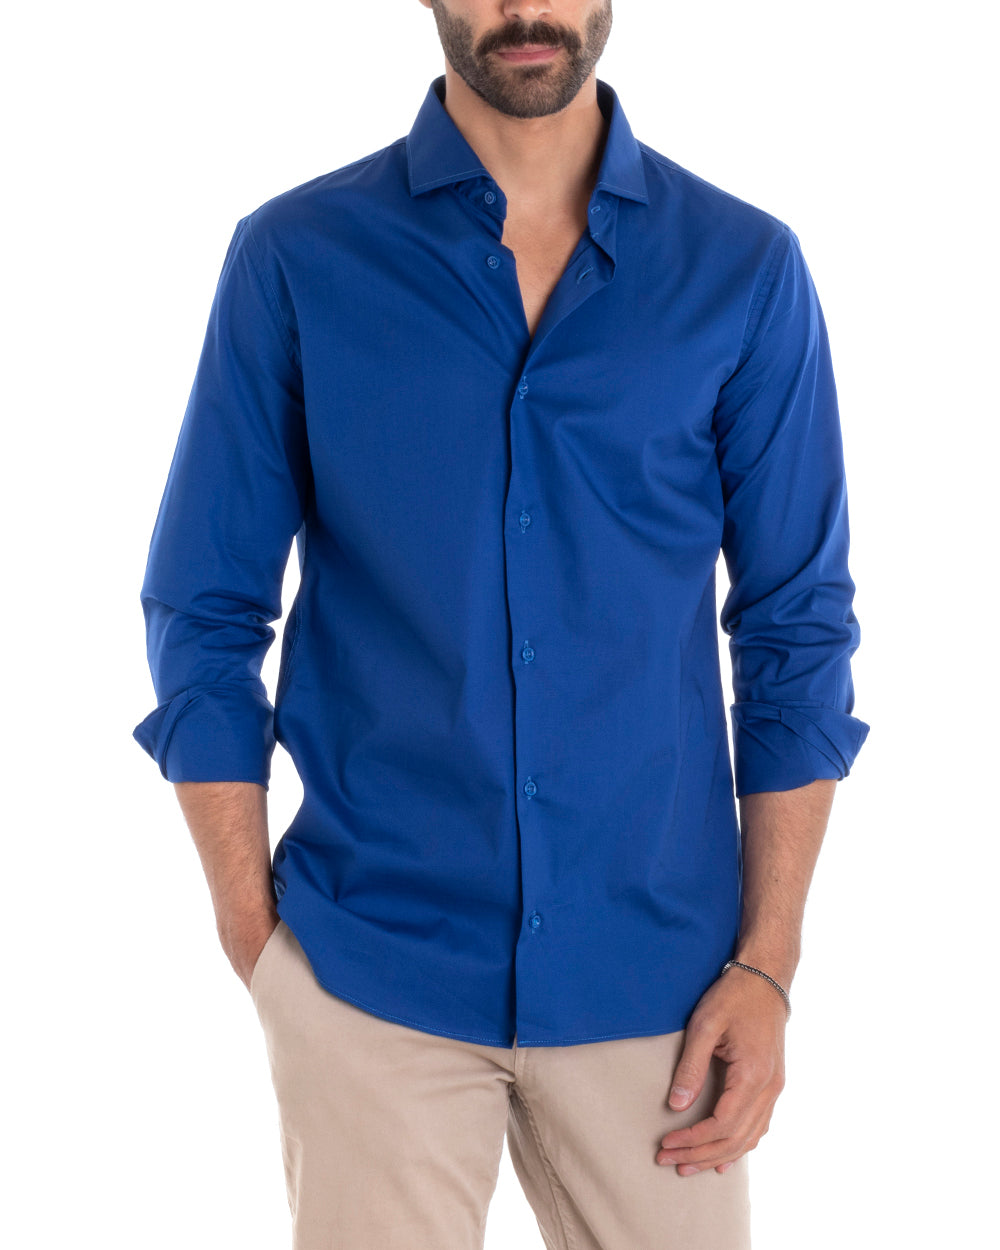 Camicia Uomo Sartoriale Con Colletto Manica Lunga Basic Cotone Morbido Blu Royal Regular Fit GIOSAL-C2391A